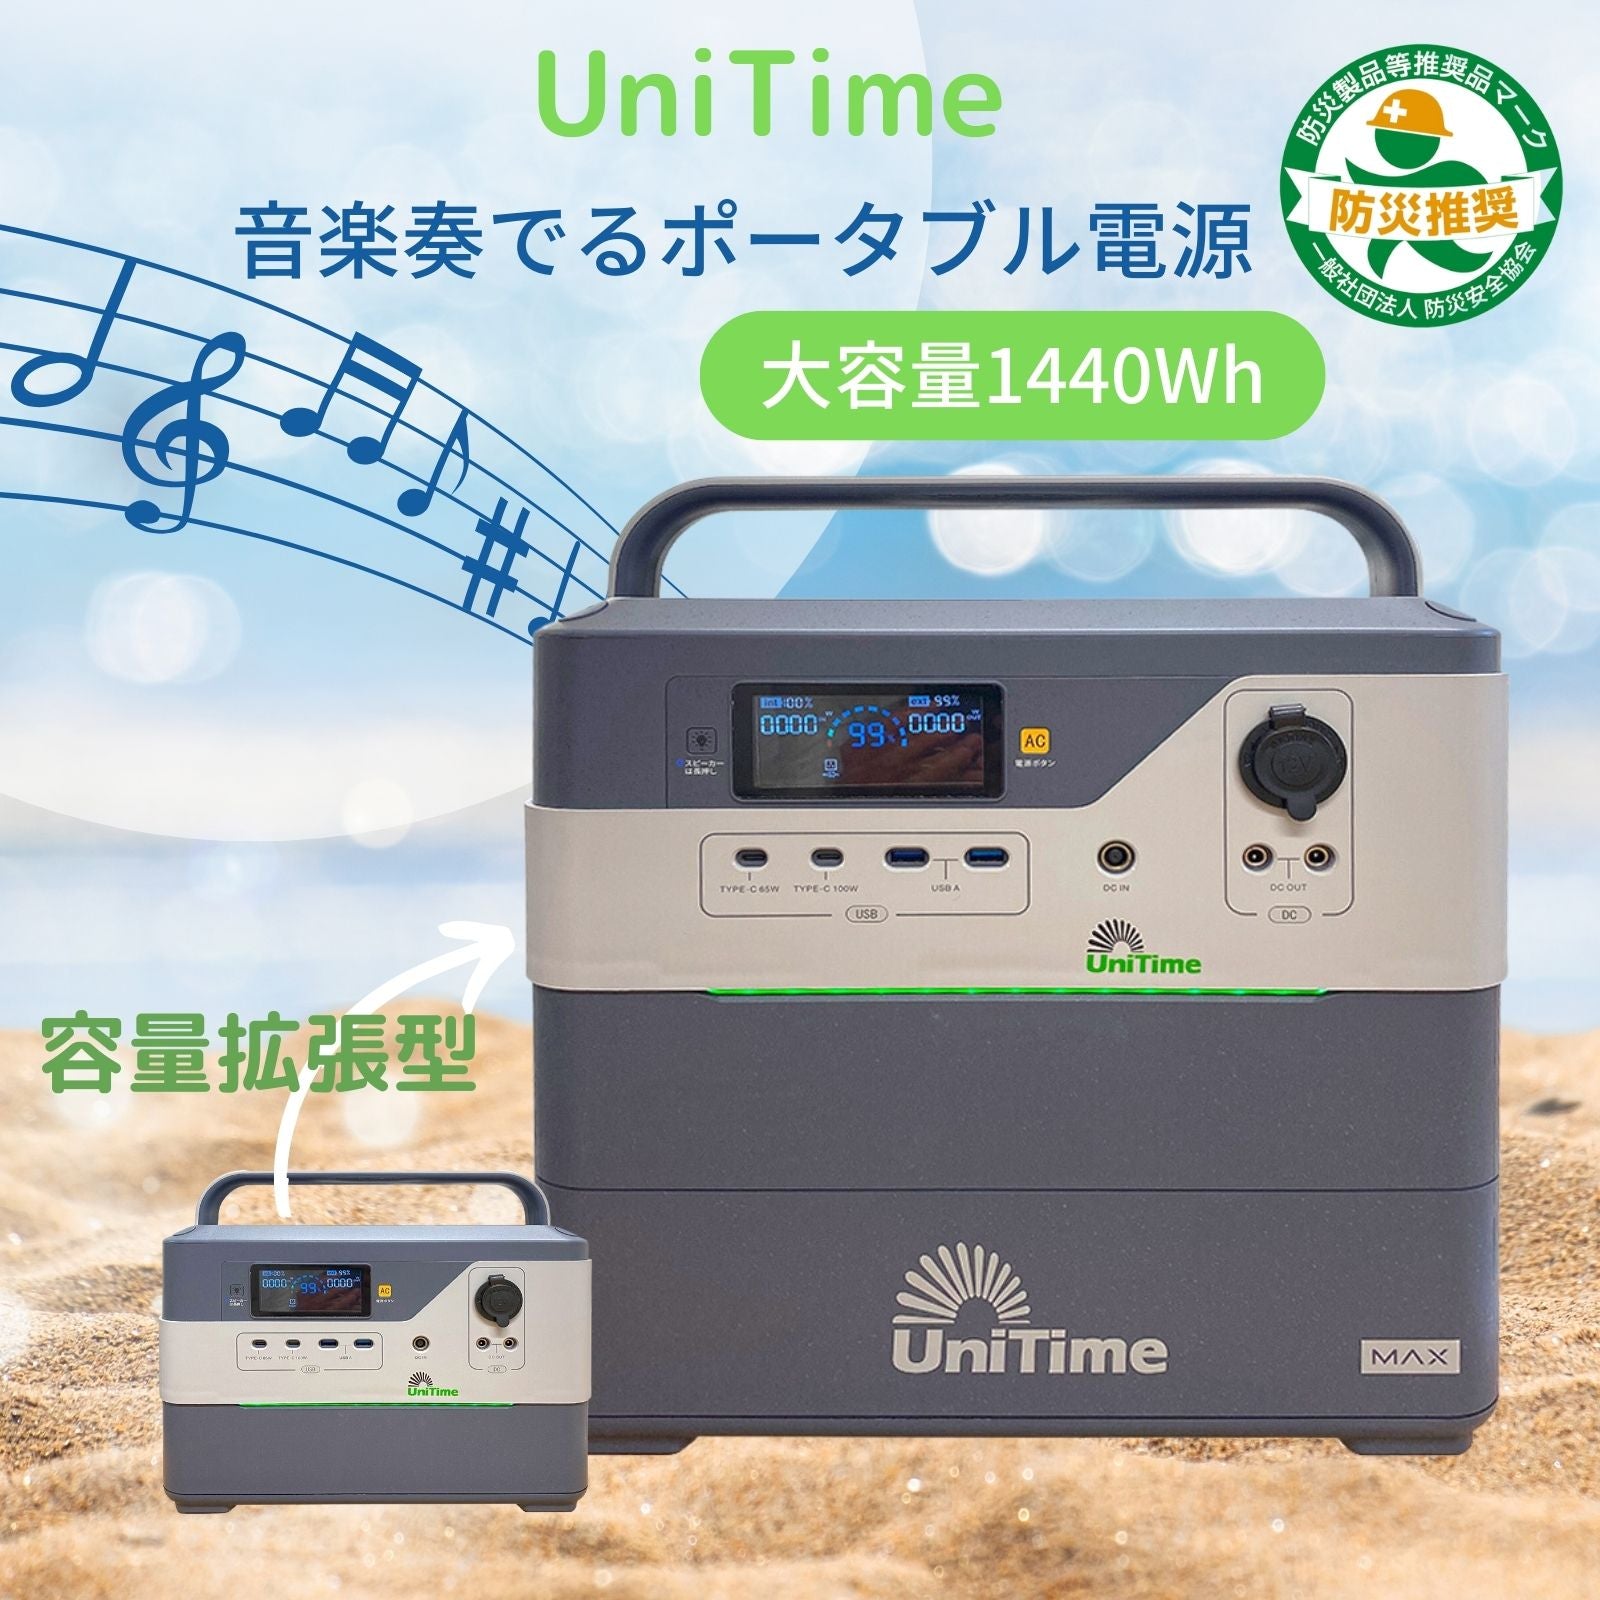 UniTime ポータブル電源 大容量1440Wh UT-720 + UT-MAX リン酸鉄 